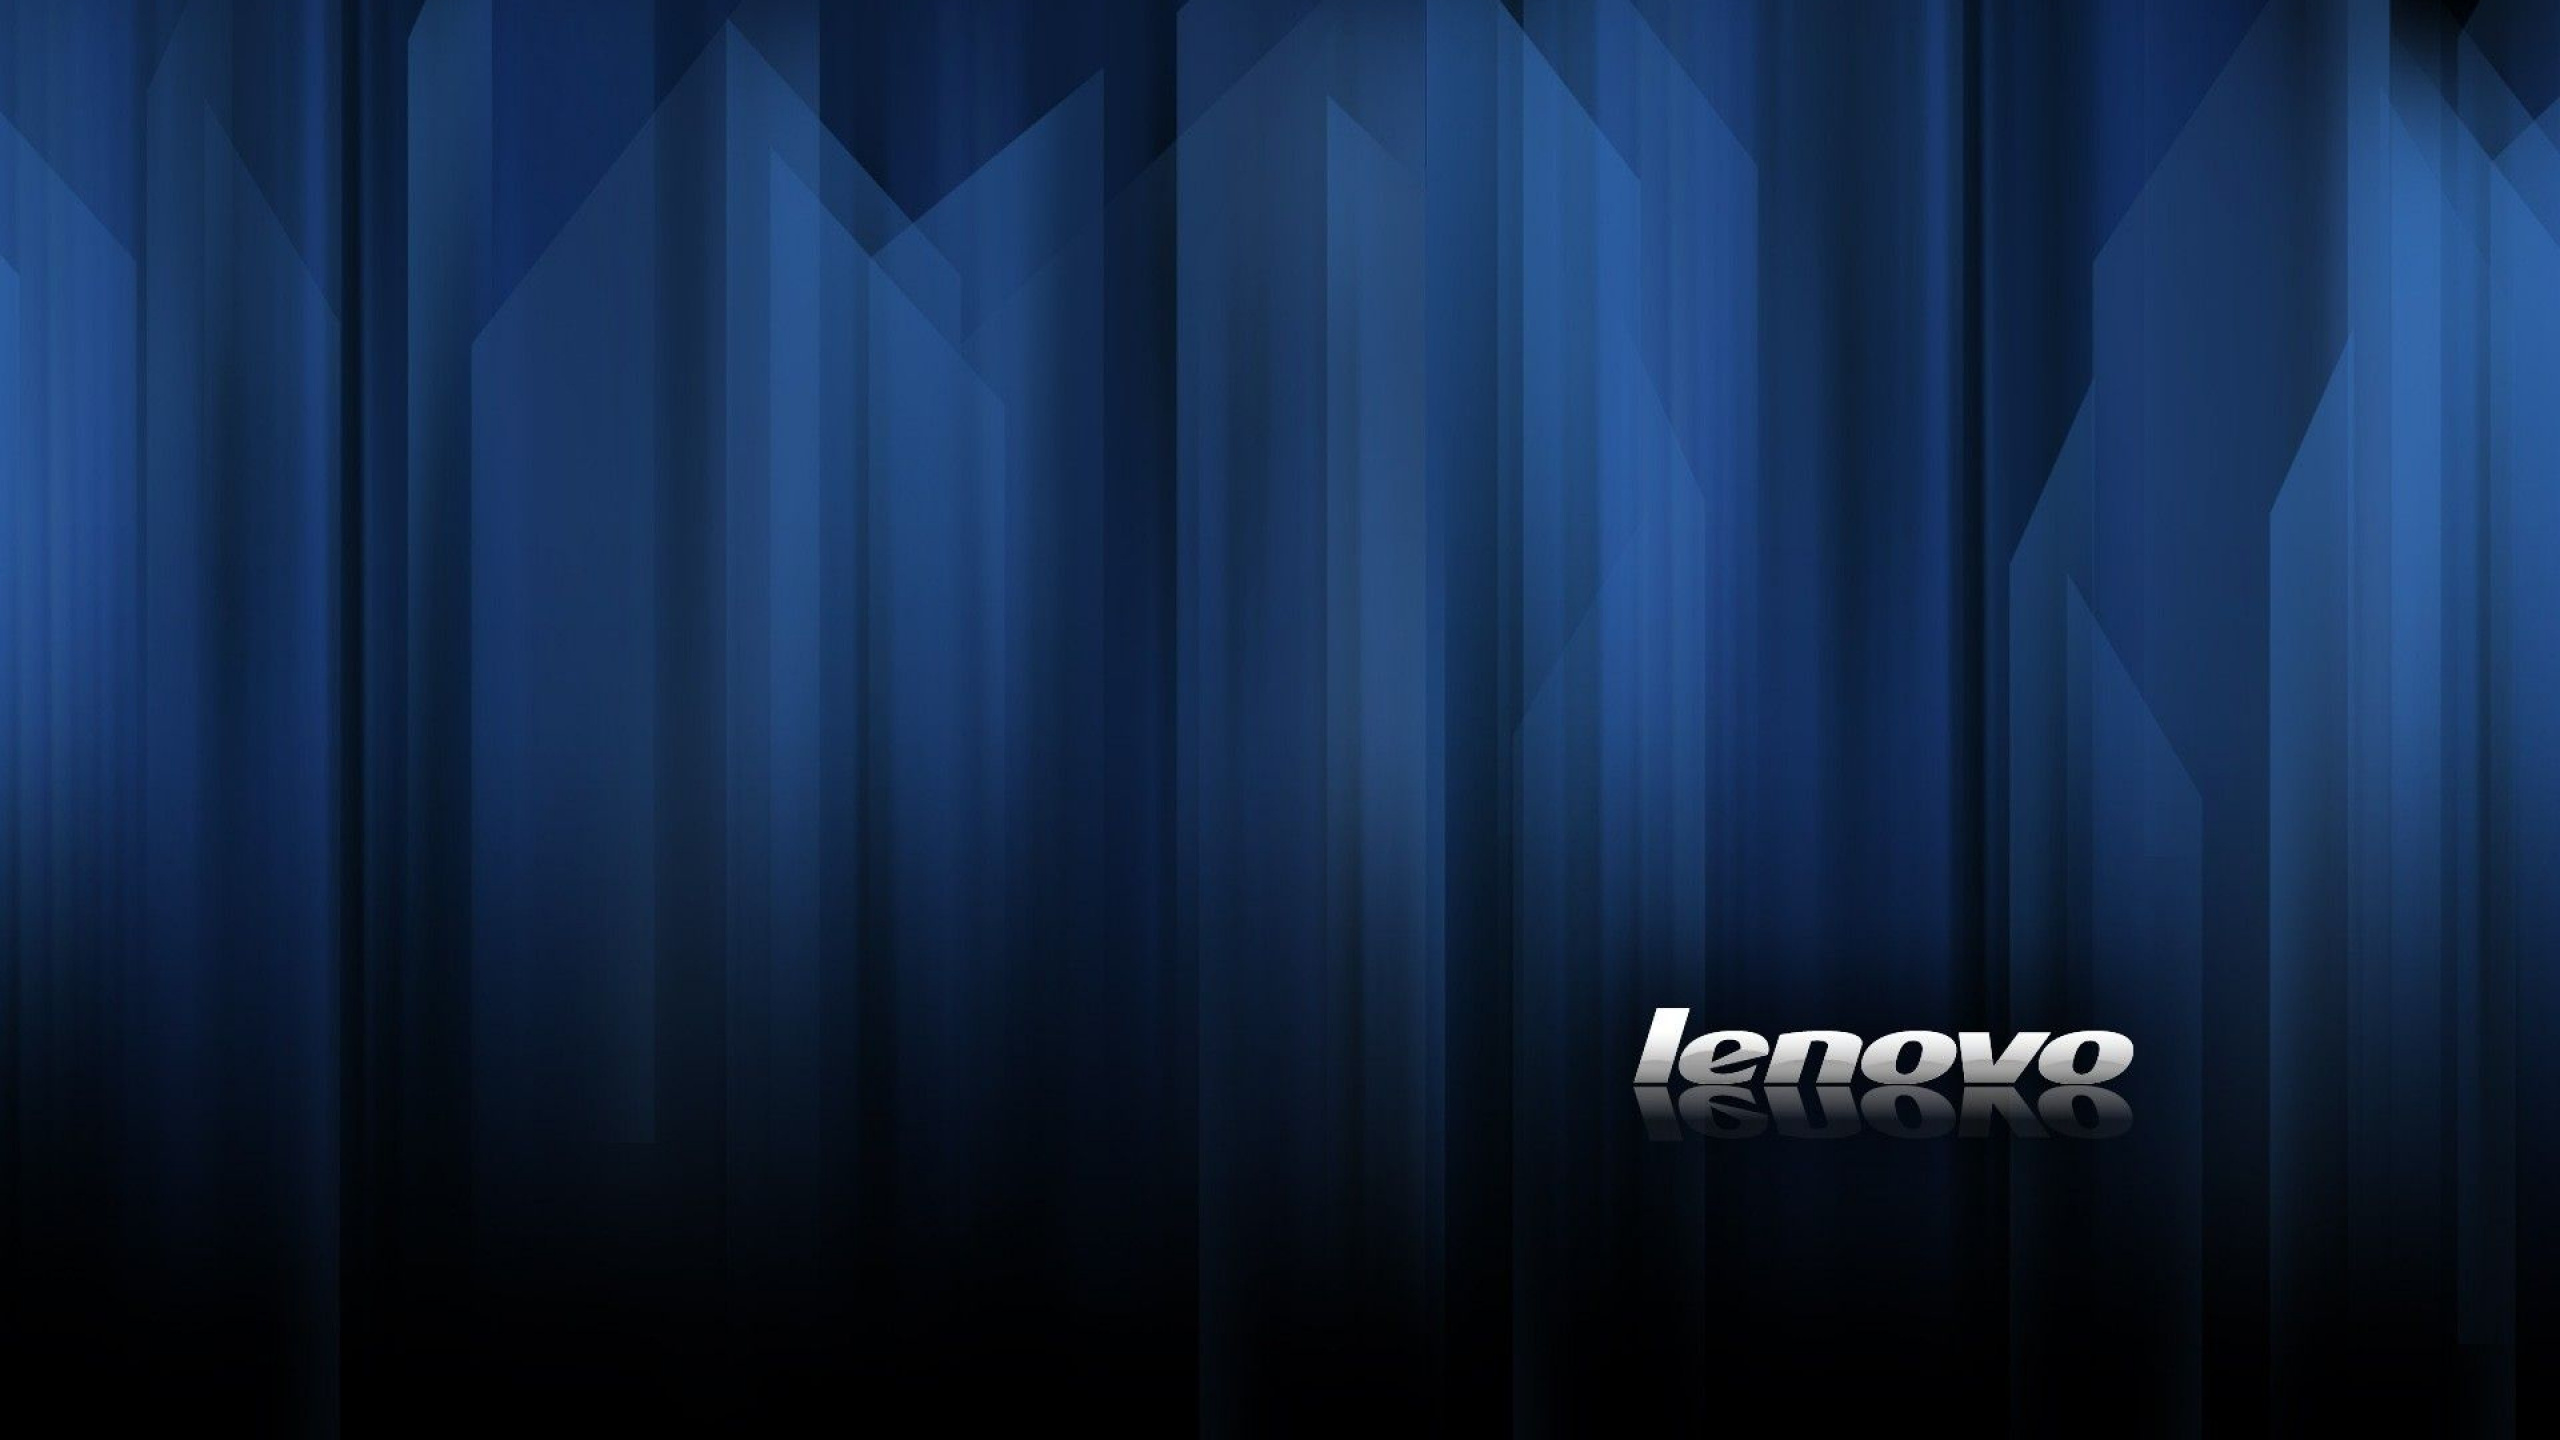 Lenovo, Azul, Cortina, Letra, Gráficos. Wallpaper in 2560x1440 Resolution